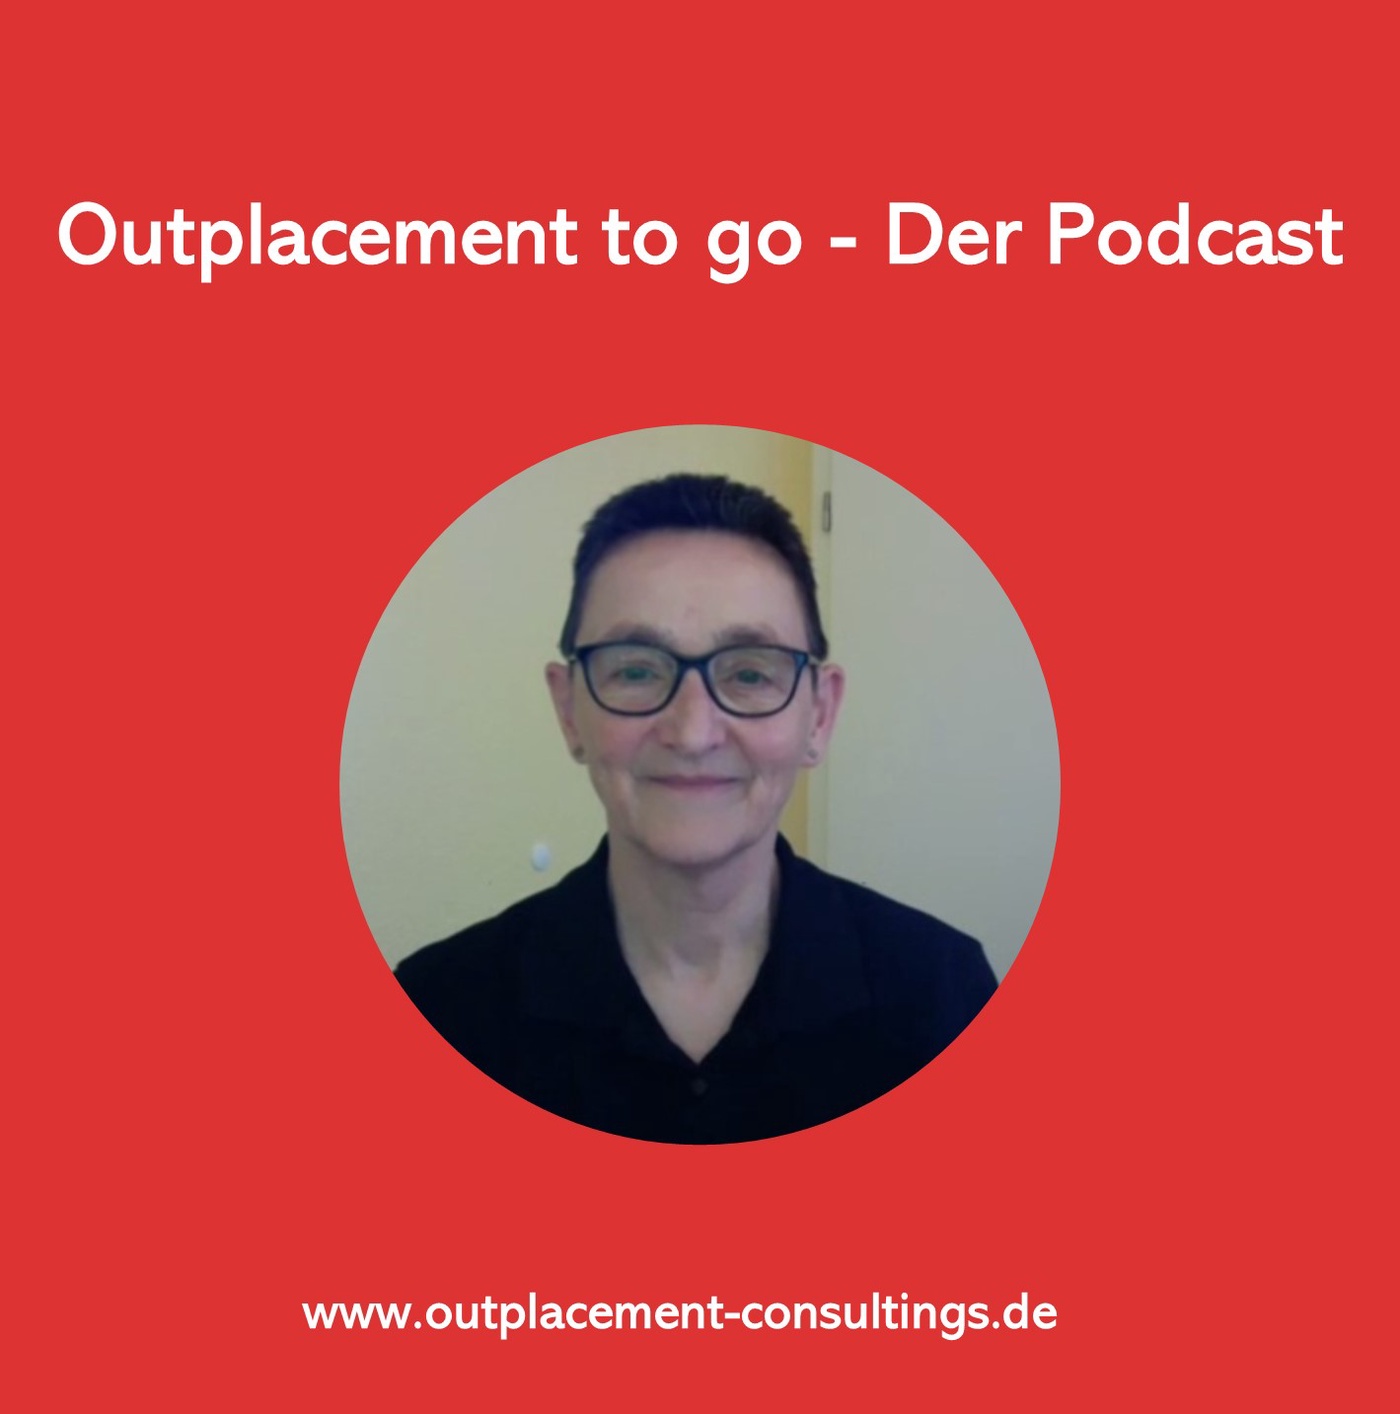 Das LUXXprofile in der Outplacement-Beratung - ein Interview mit Margot Hein | Outplacement-Consultings